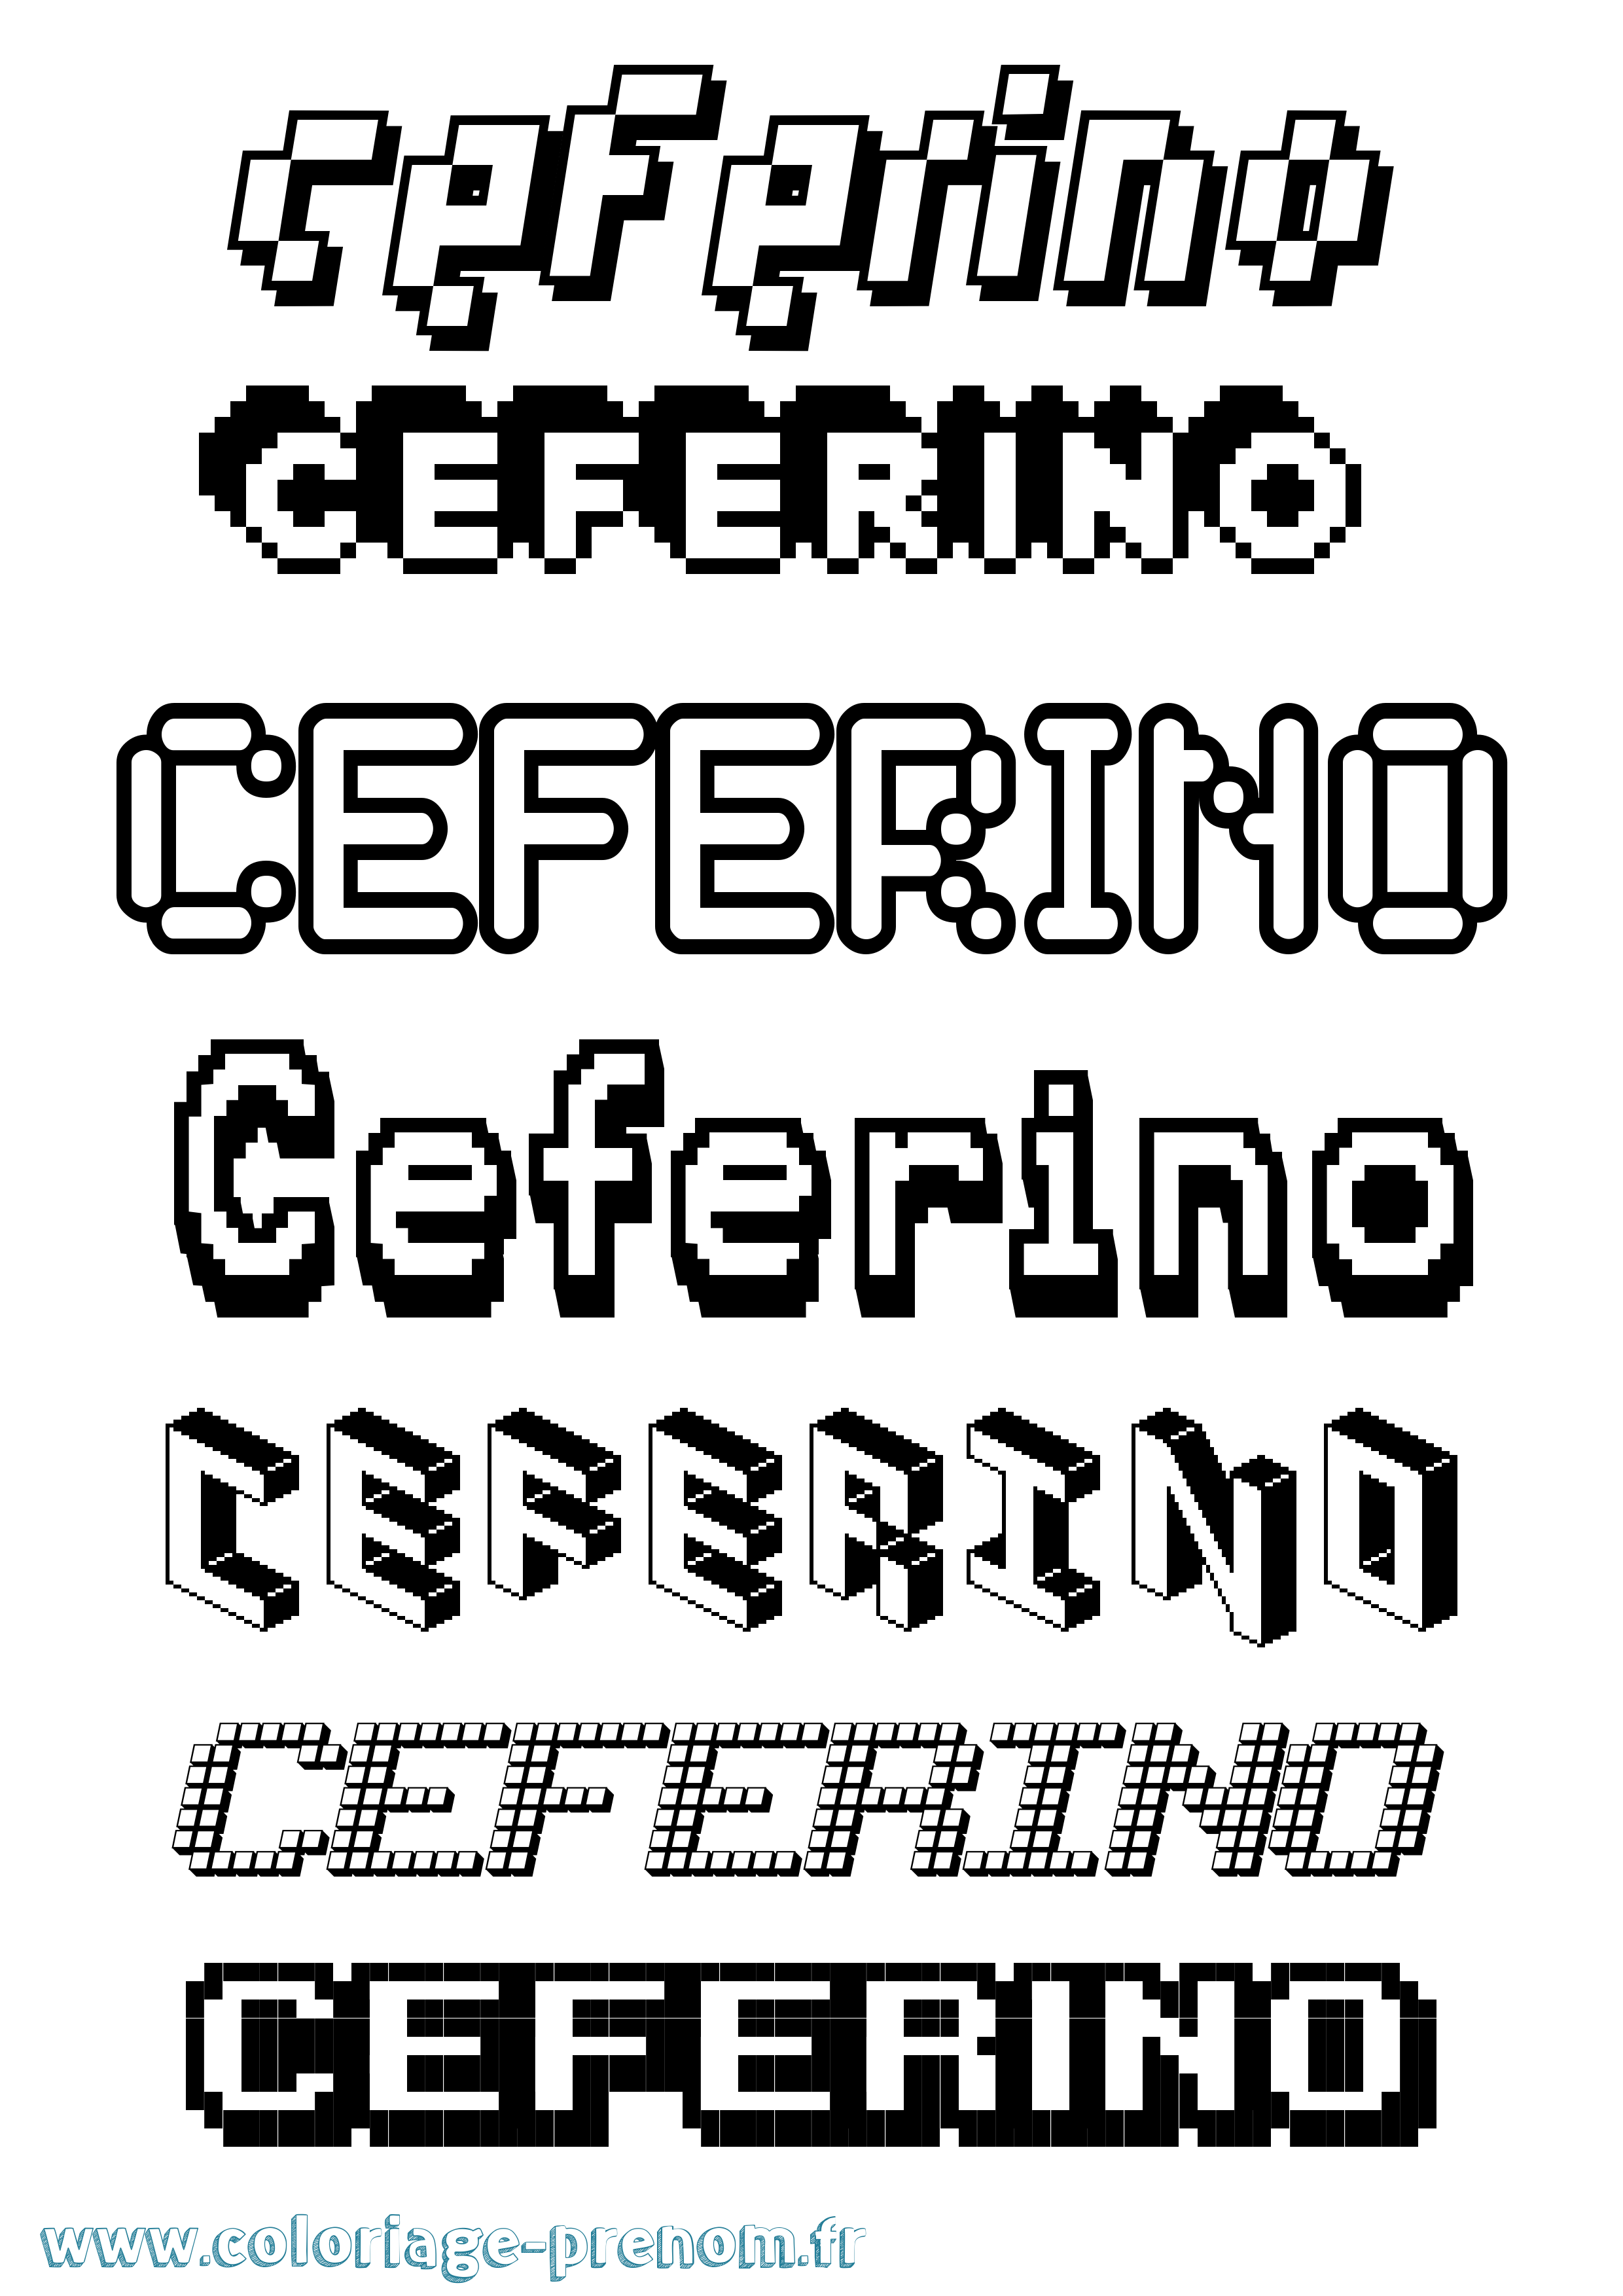 Coloriage prénom Ceferino Pixel